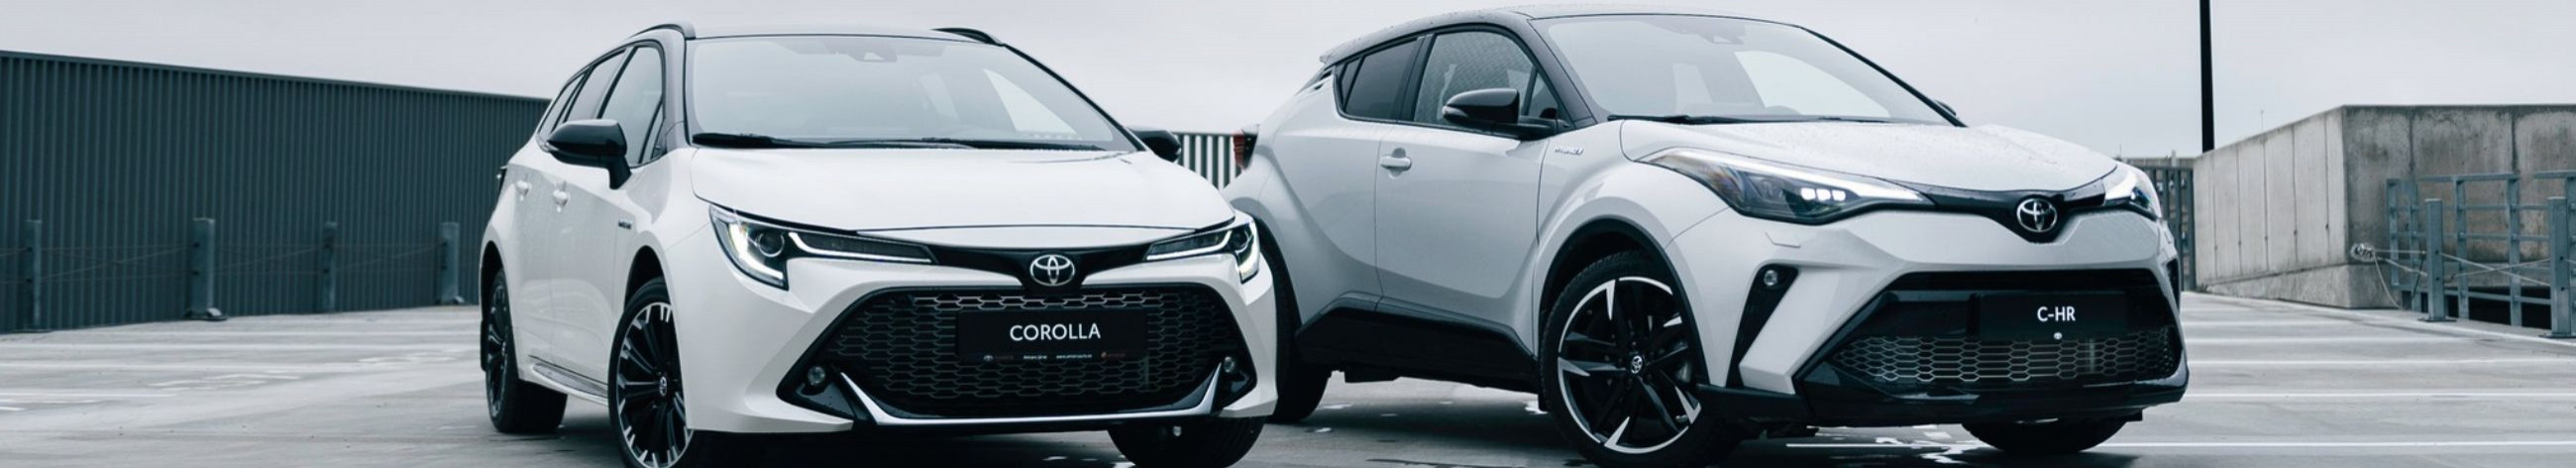 Kõrgeim teenindusstandard, hoolivus, soojus ja abivalmidus on meie põhiväärtused, mida kliendid on tunnustanud kui "Baltimaade parimat Toyota klienditeenindust" ning need väärtused ootavad teid kõigis meie esindustes üle Eesti.